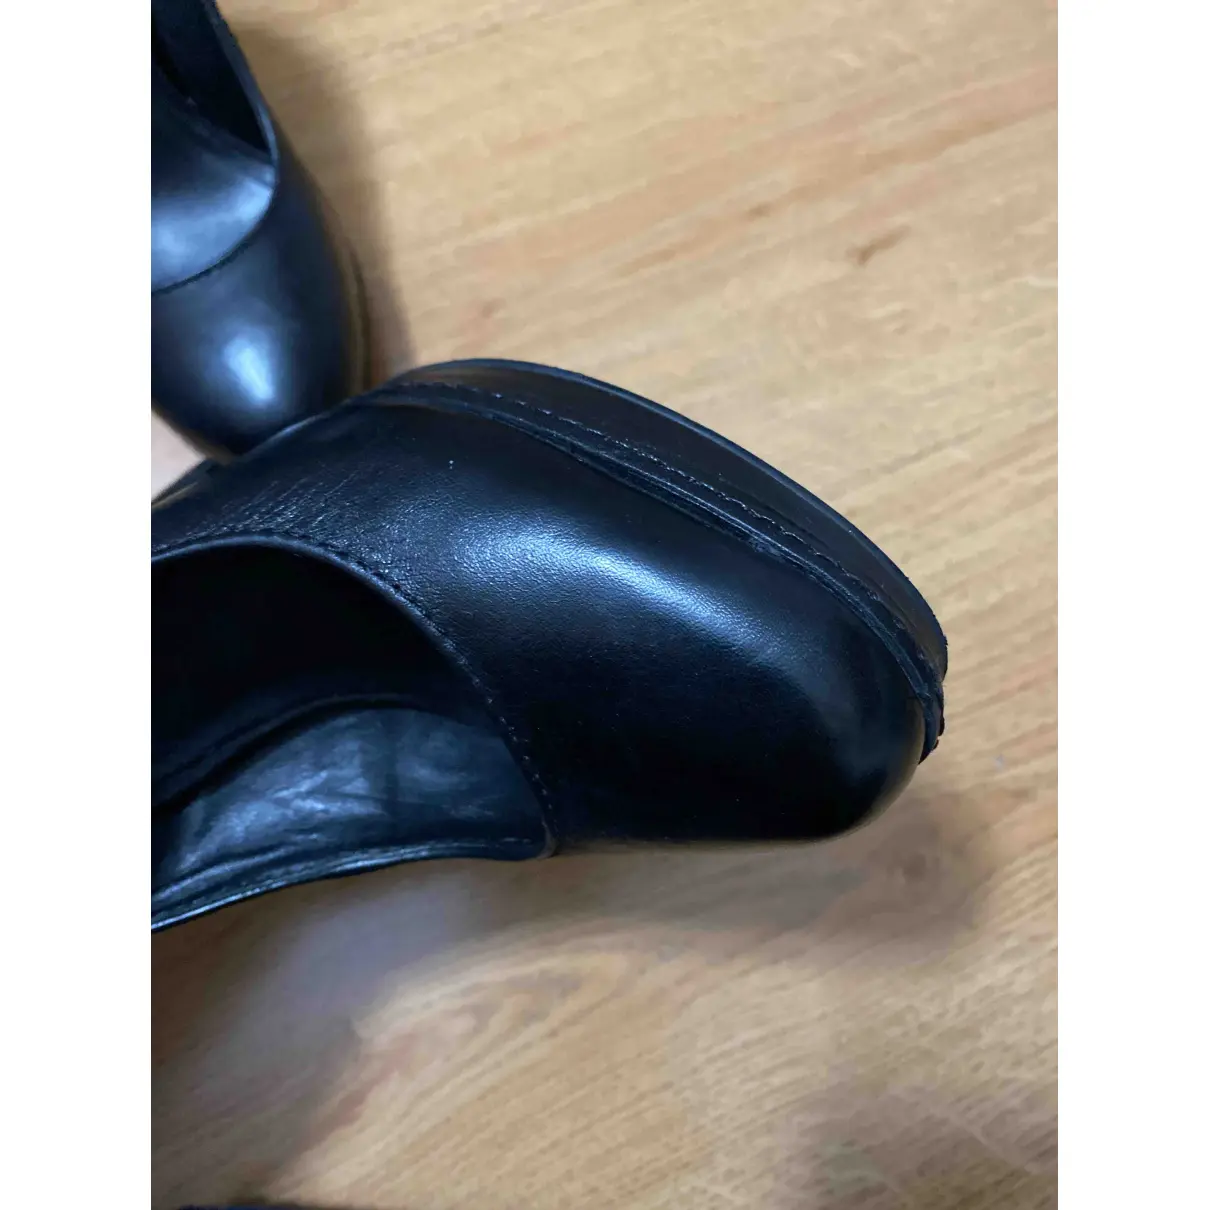 Leather heels MINELLI